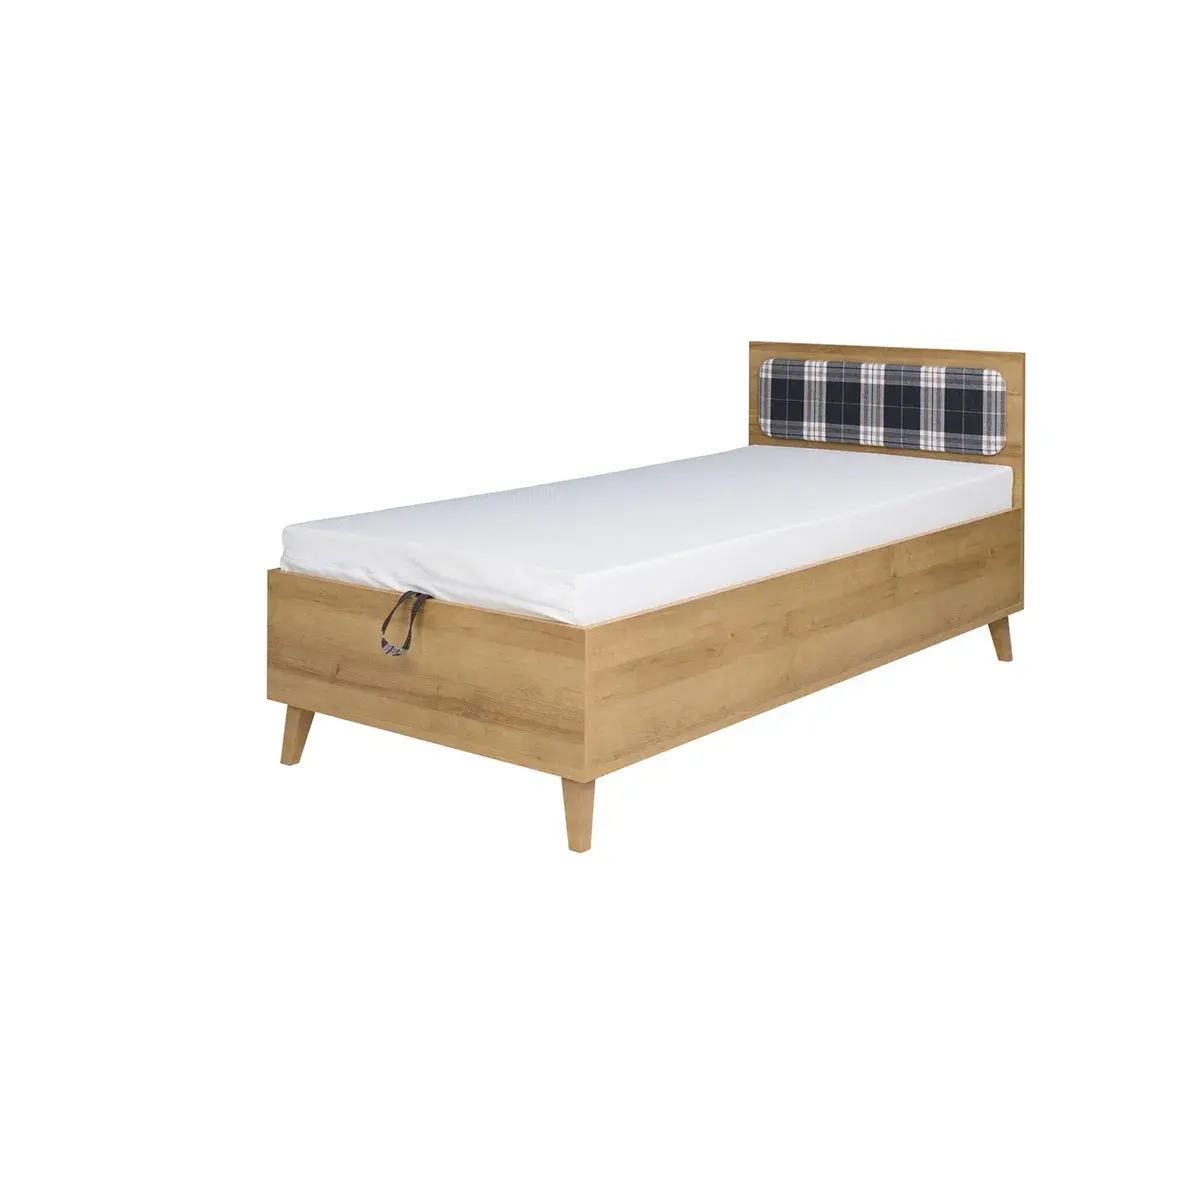 Łóżko Memone M- 04 - łóżko ze stelażem i pojemnikiem 90x200, zagłówek